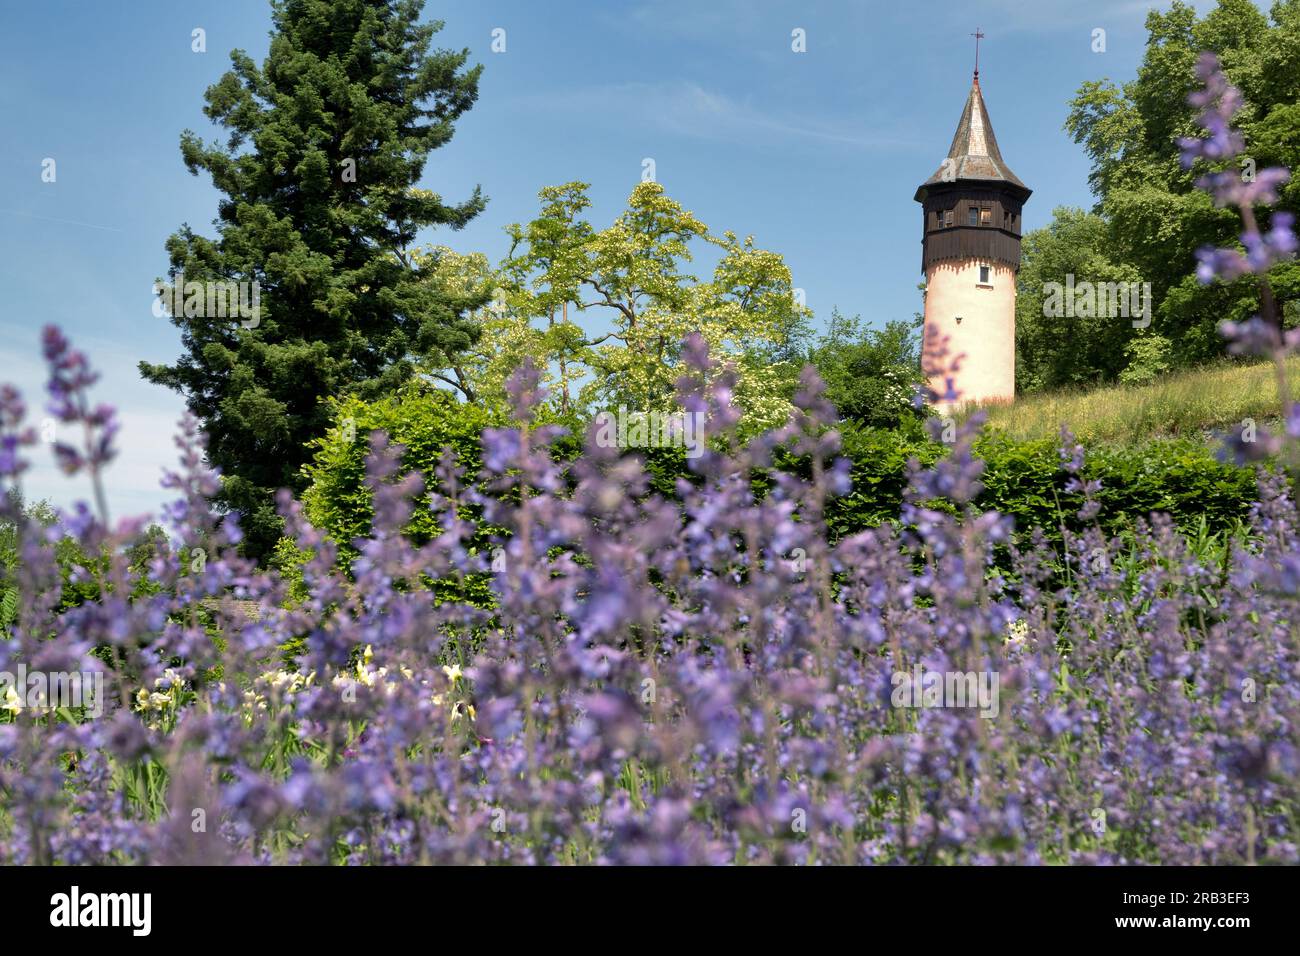 Mainau Island, Deutschland: Schwedischer Turm und blühende Stauden. Blütenpracht im botanischen Garten auf der Insel am Konstansee Stockfoto